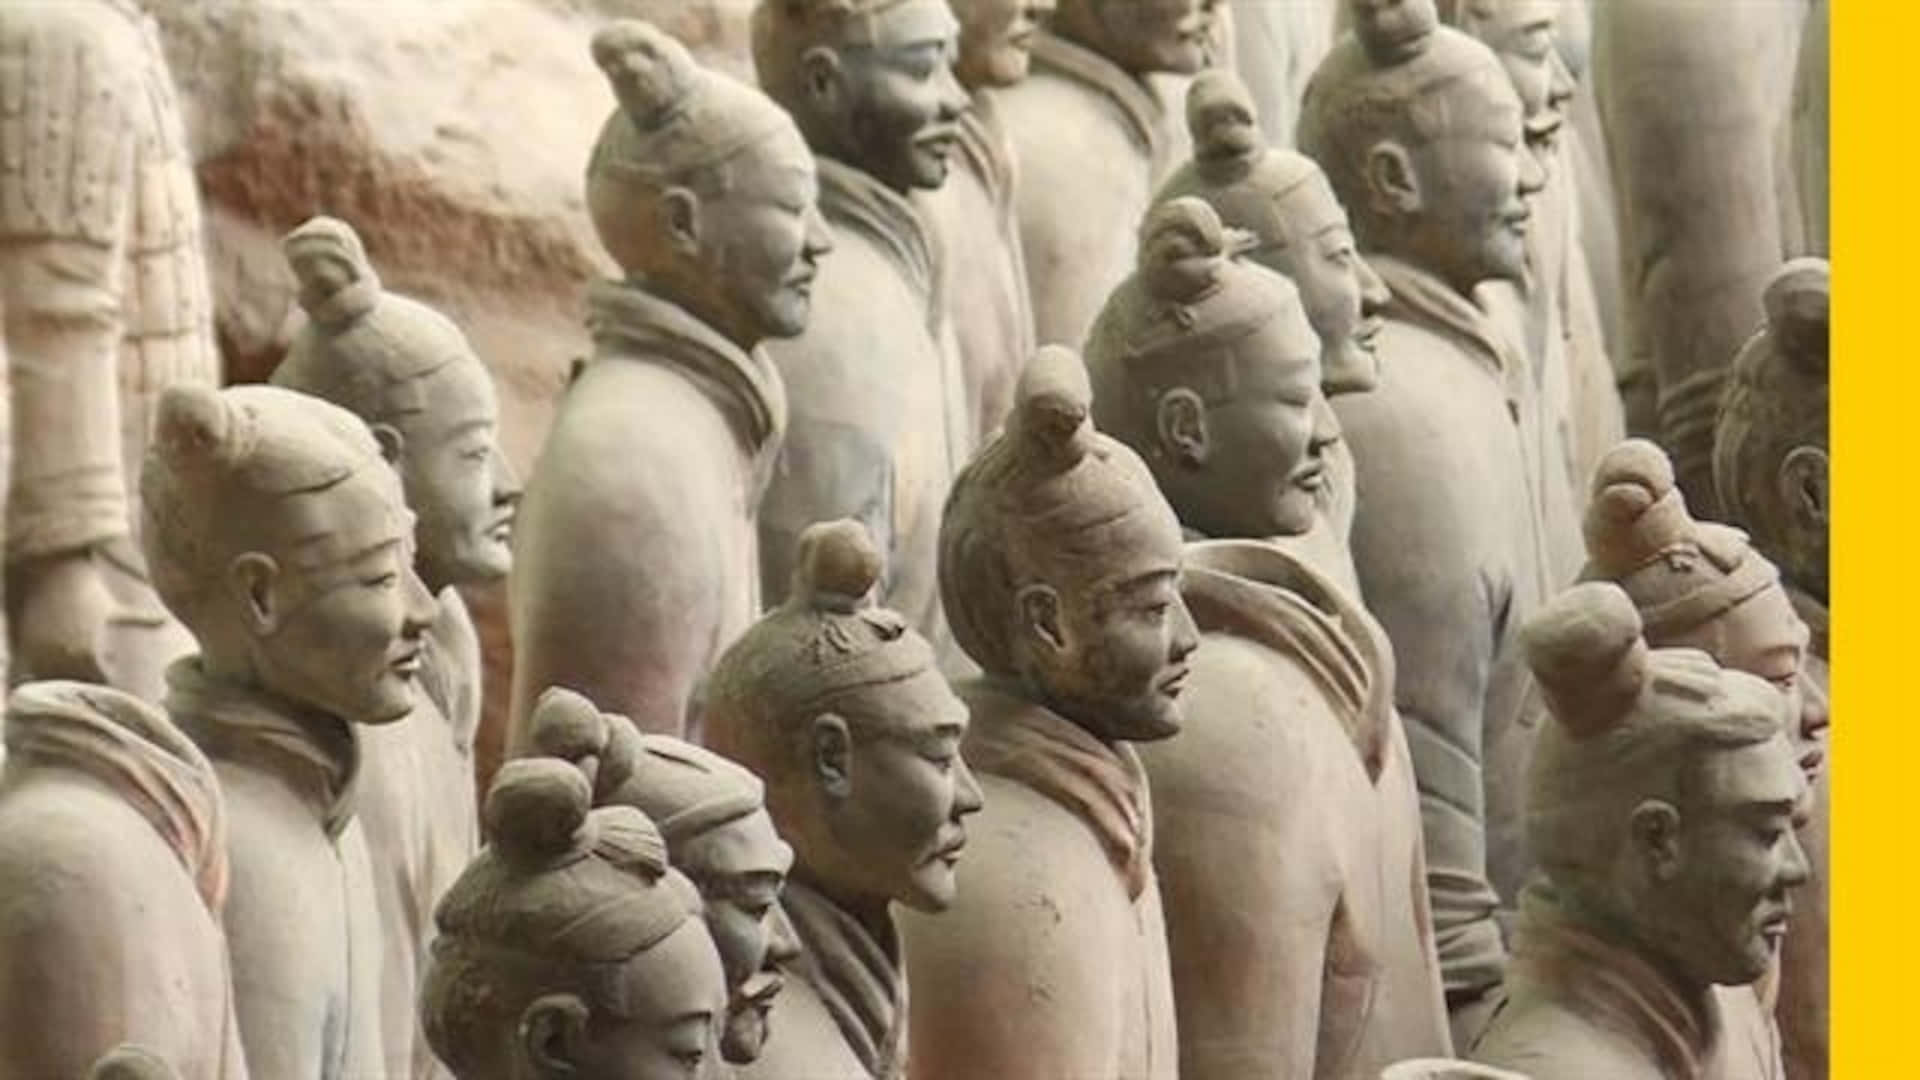 Terracotta Warriors Sculptures China Museum Wallpaper